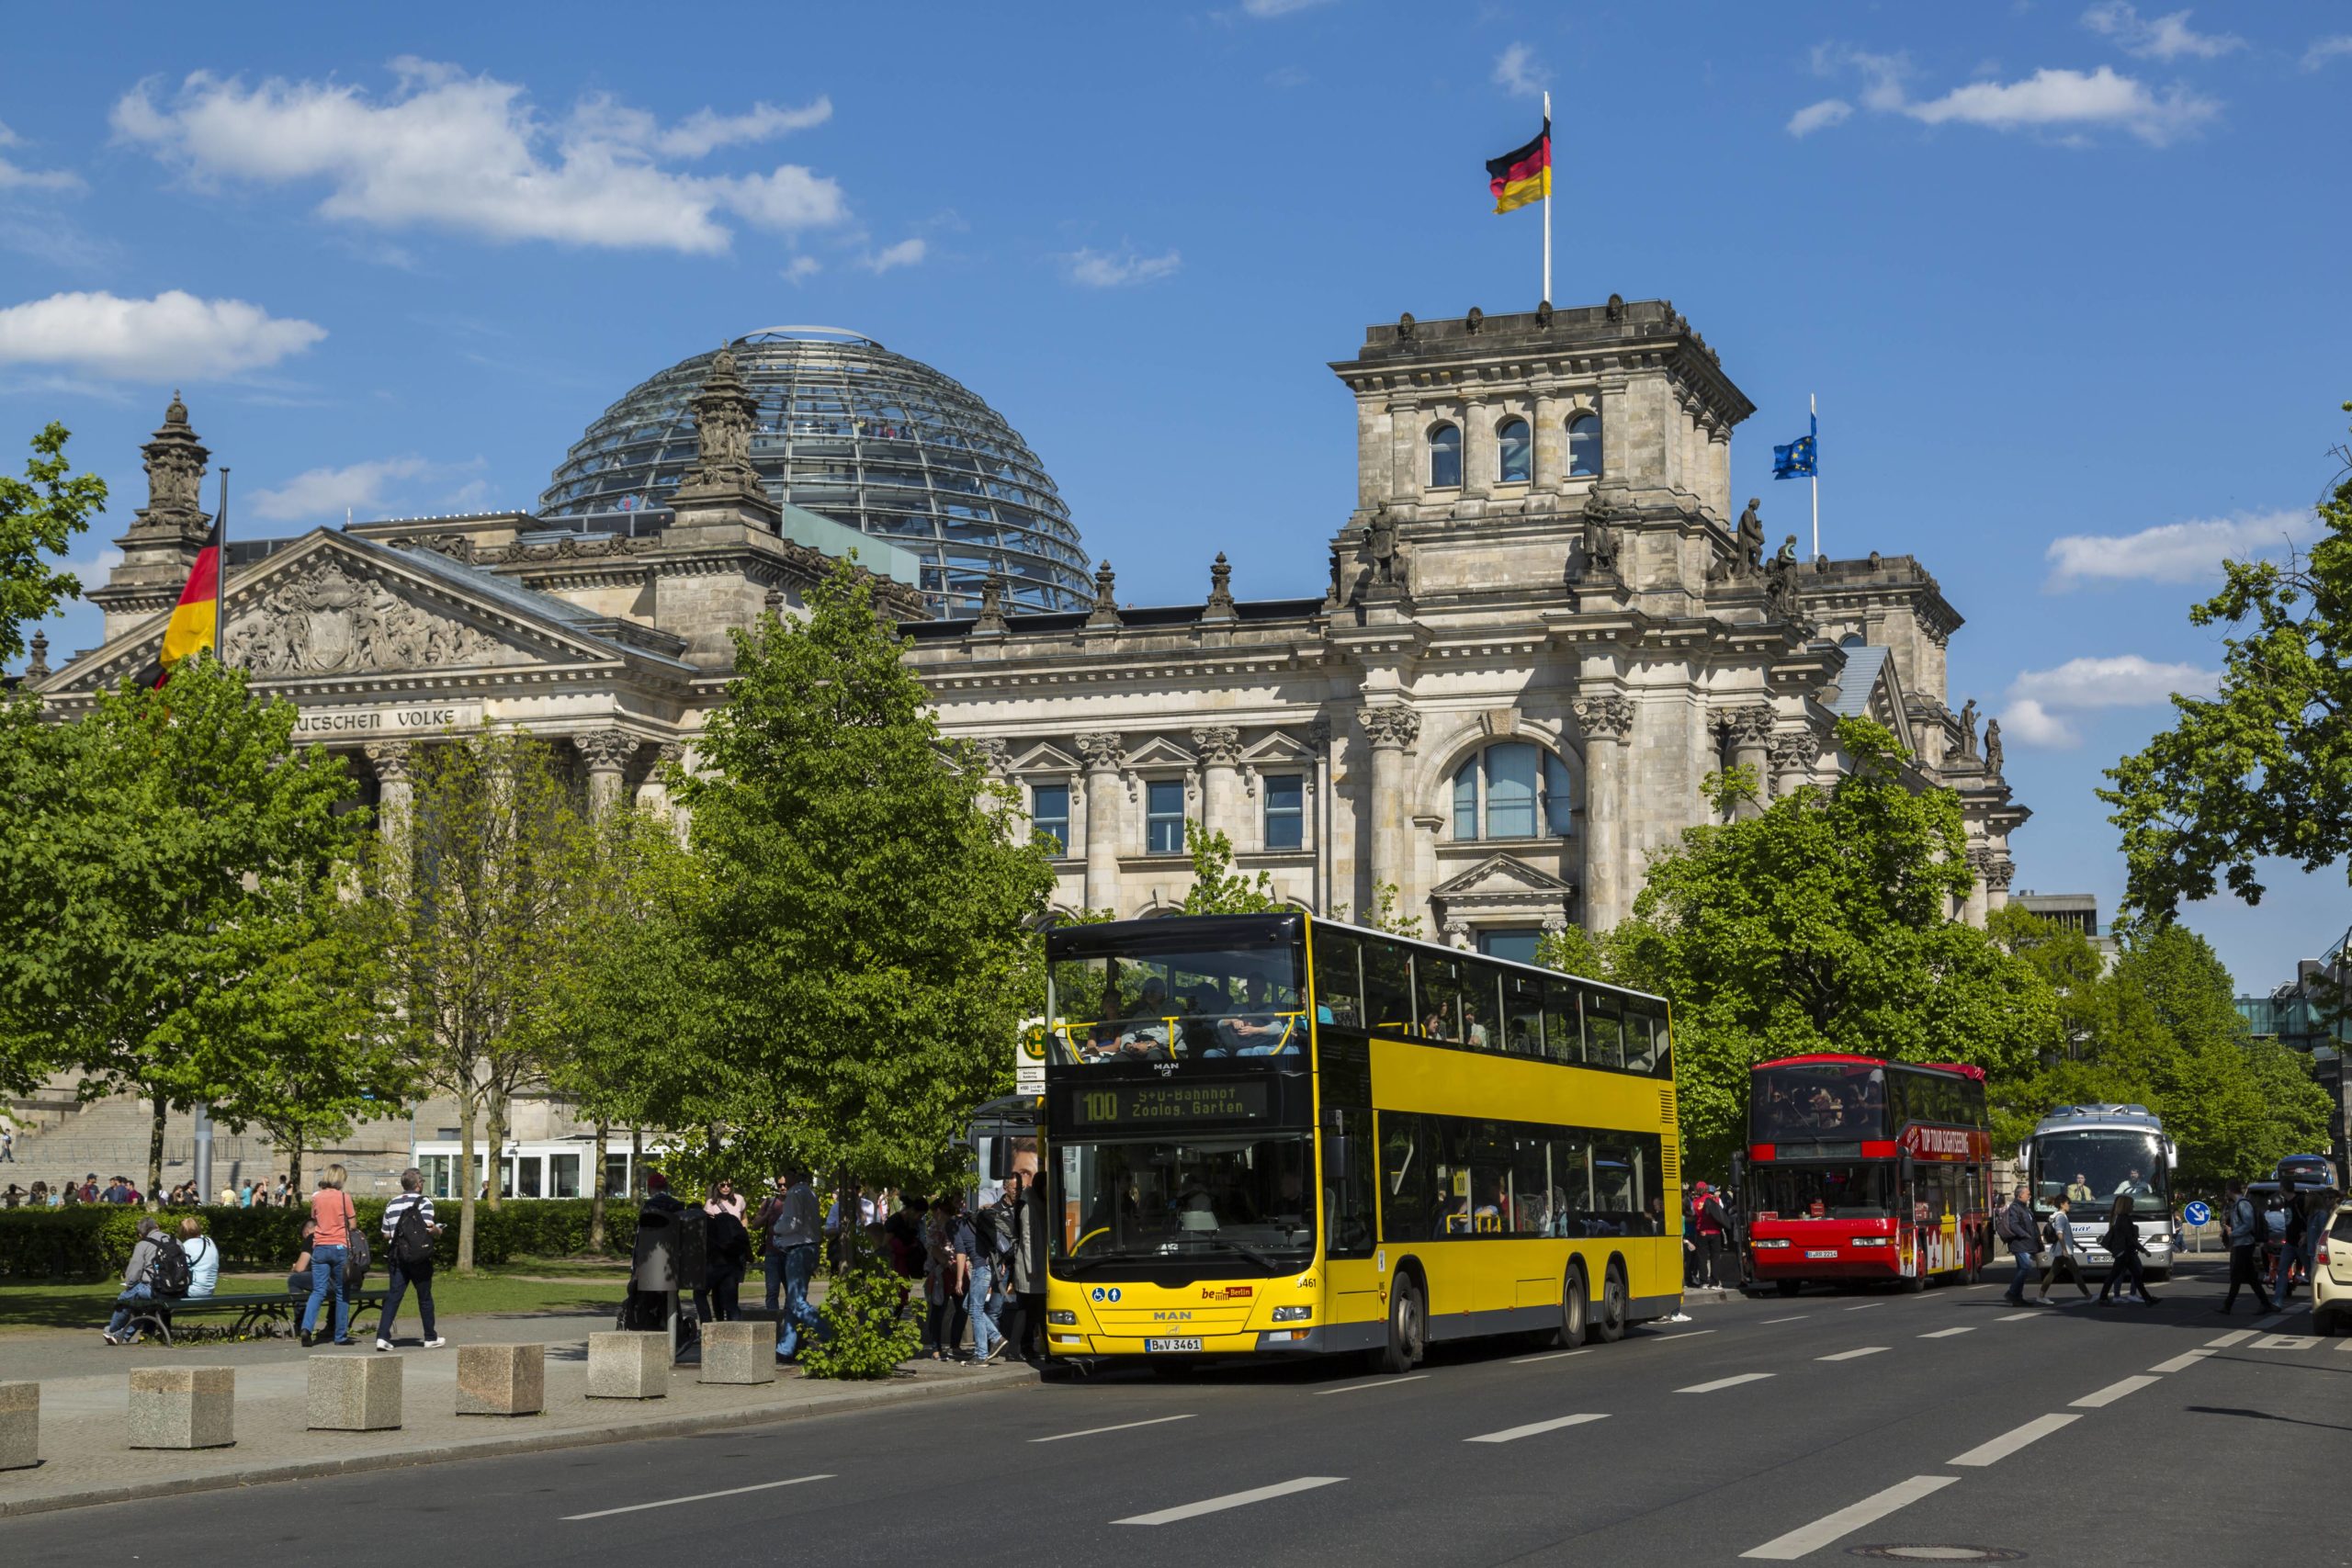 bus tour berlin linie 100